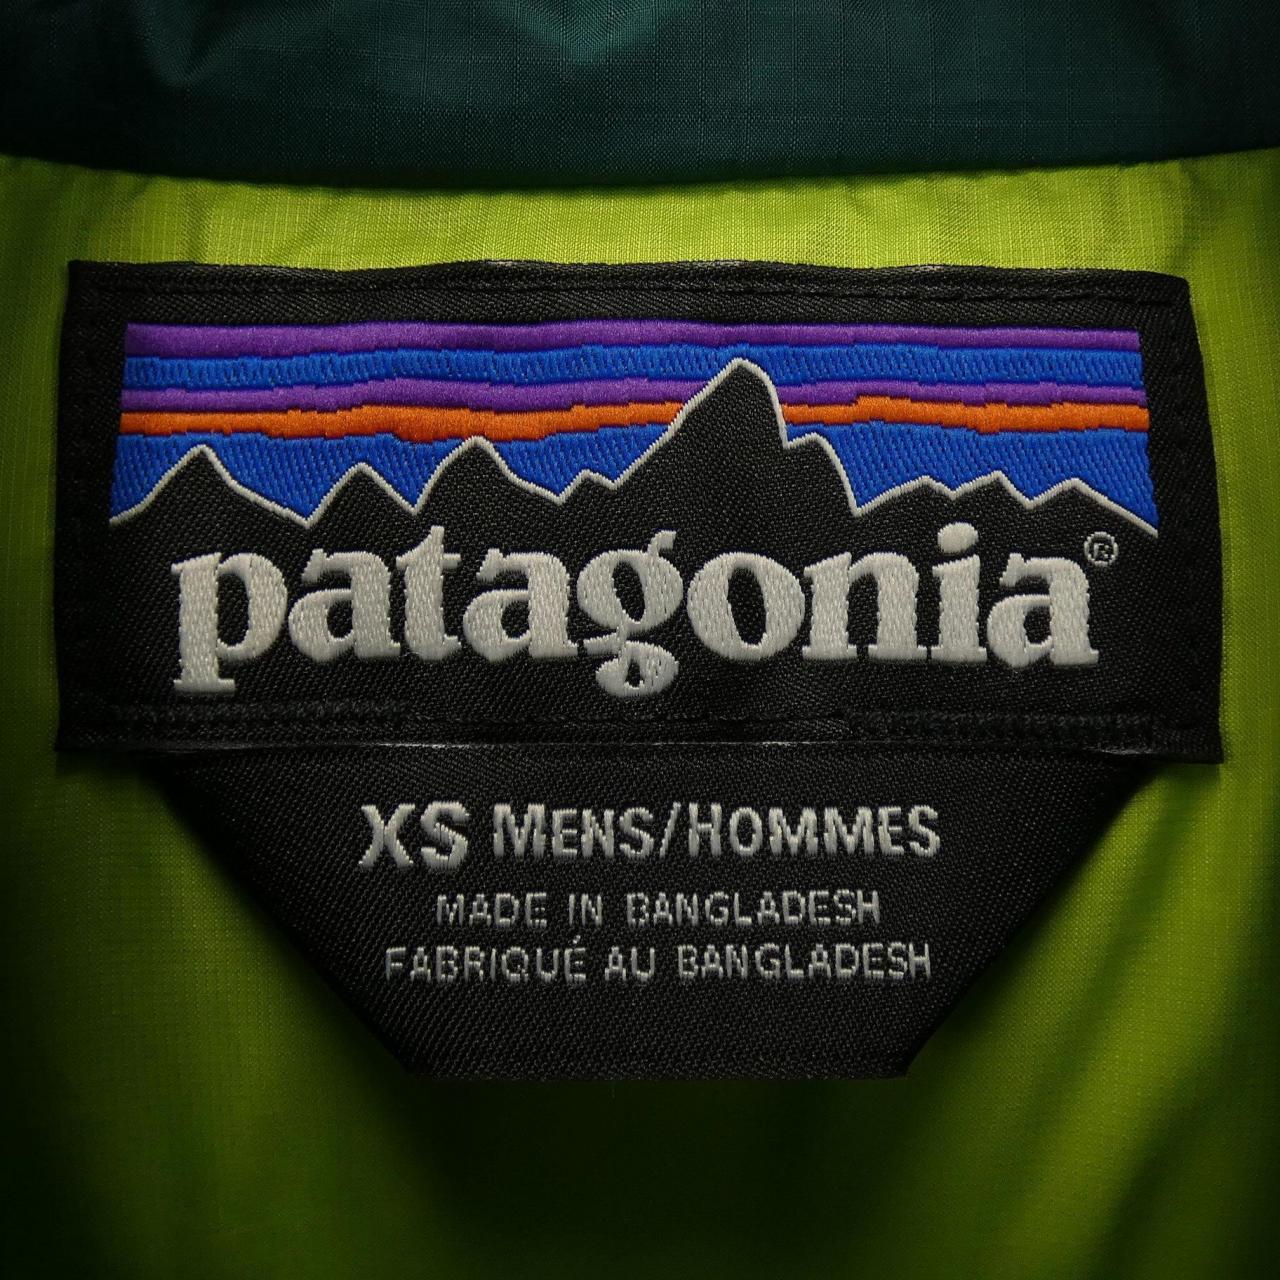 パタゴニア PATAGONIA ダウンジャケット